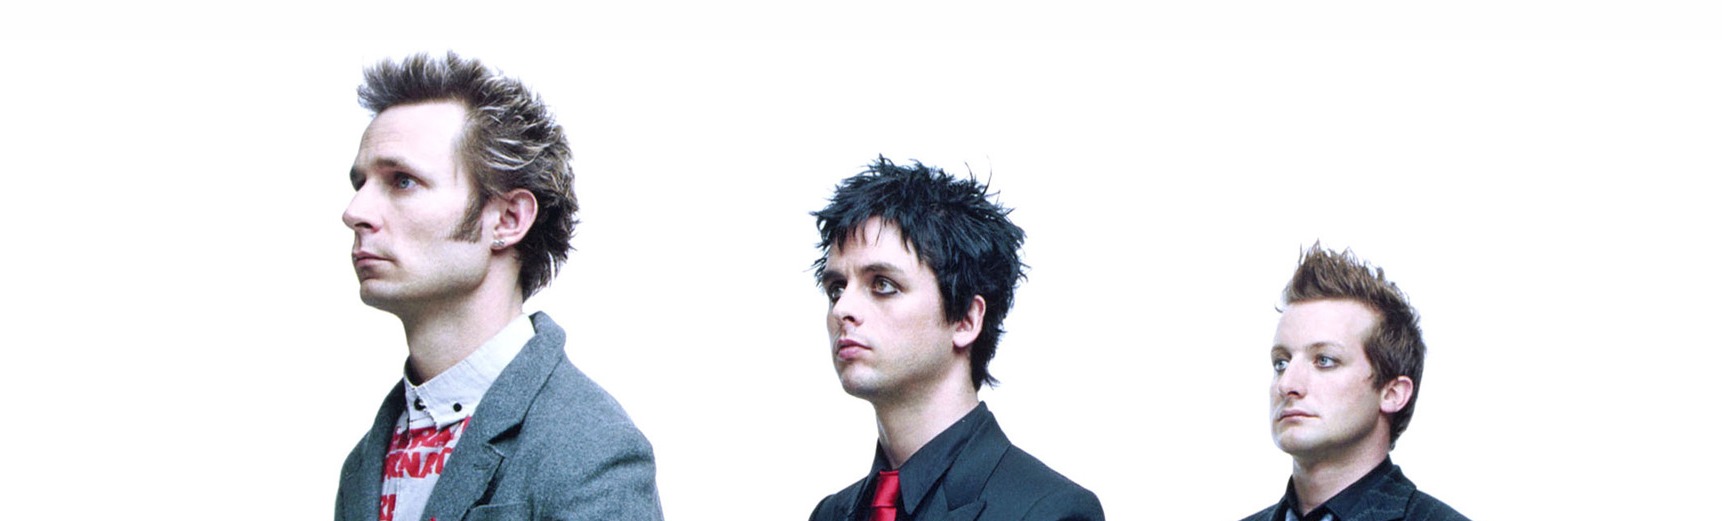 Концерты Green Day и ДДТ на «Открытие Арене» переносятся на 2021 год